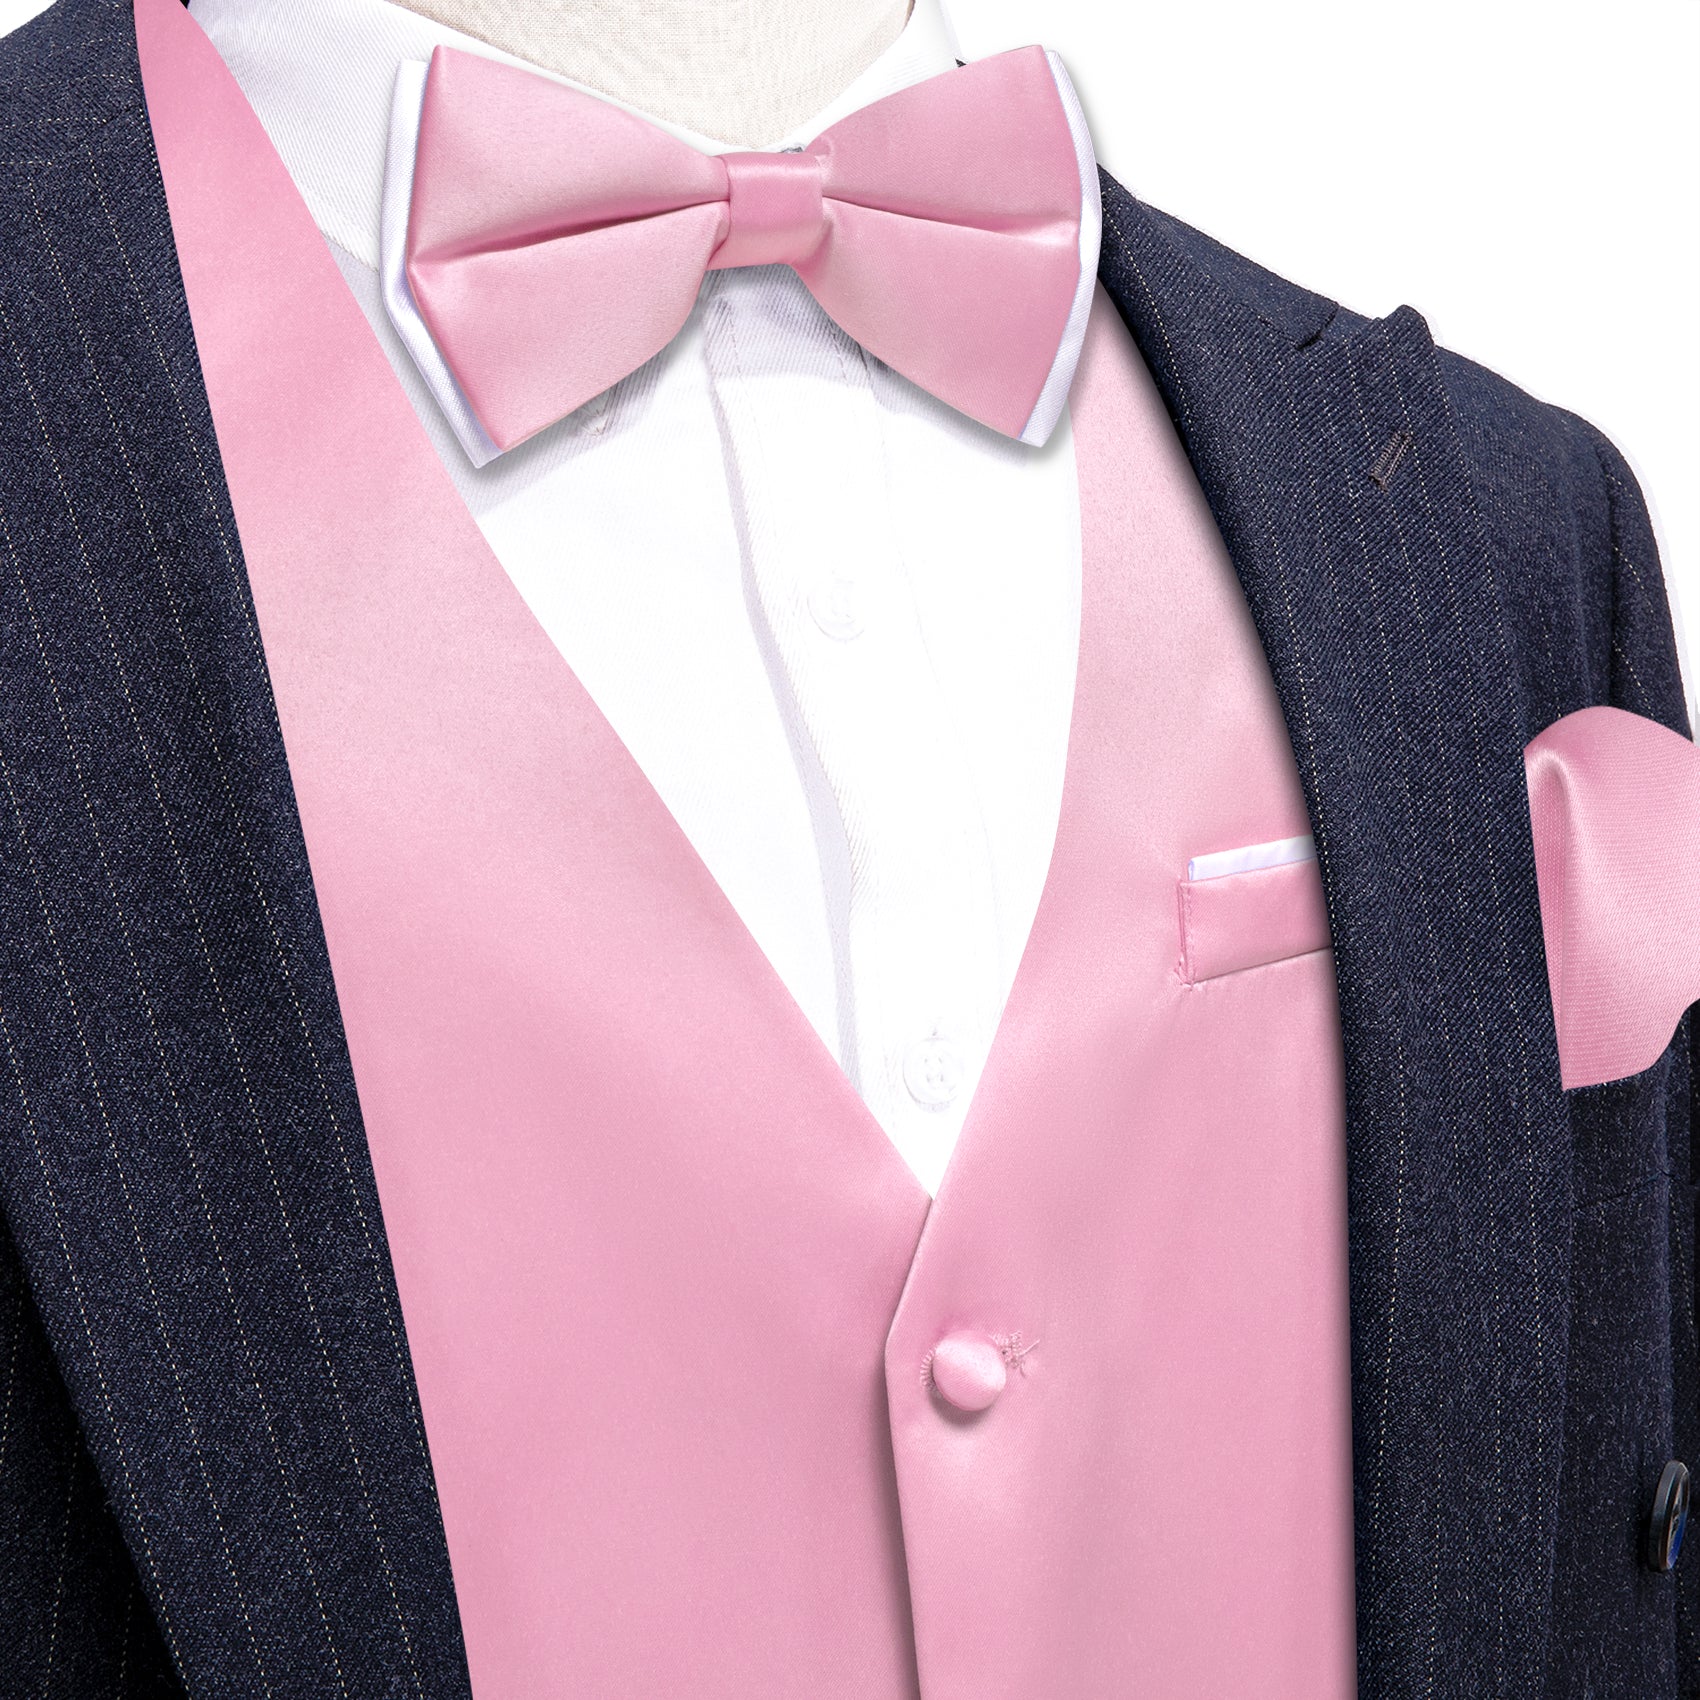 Pink Solid Silk Vest Bowtie Pocket Square Cufflinks Set